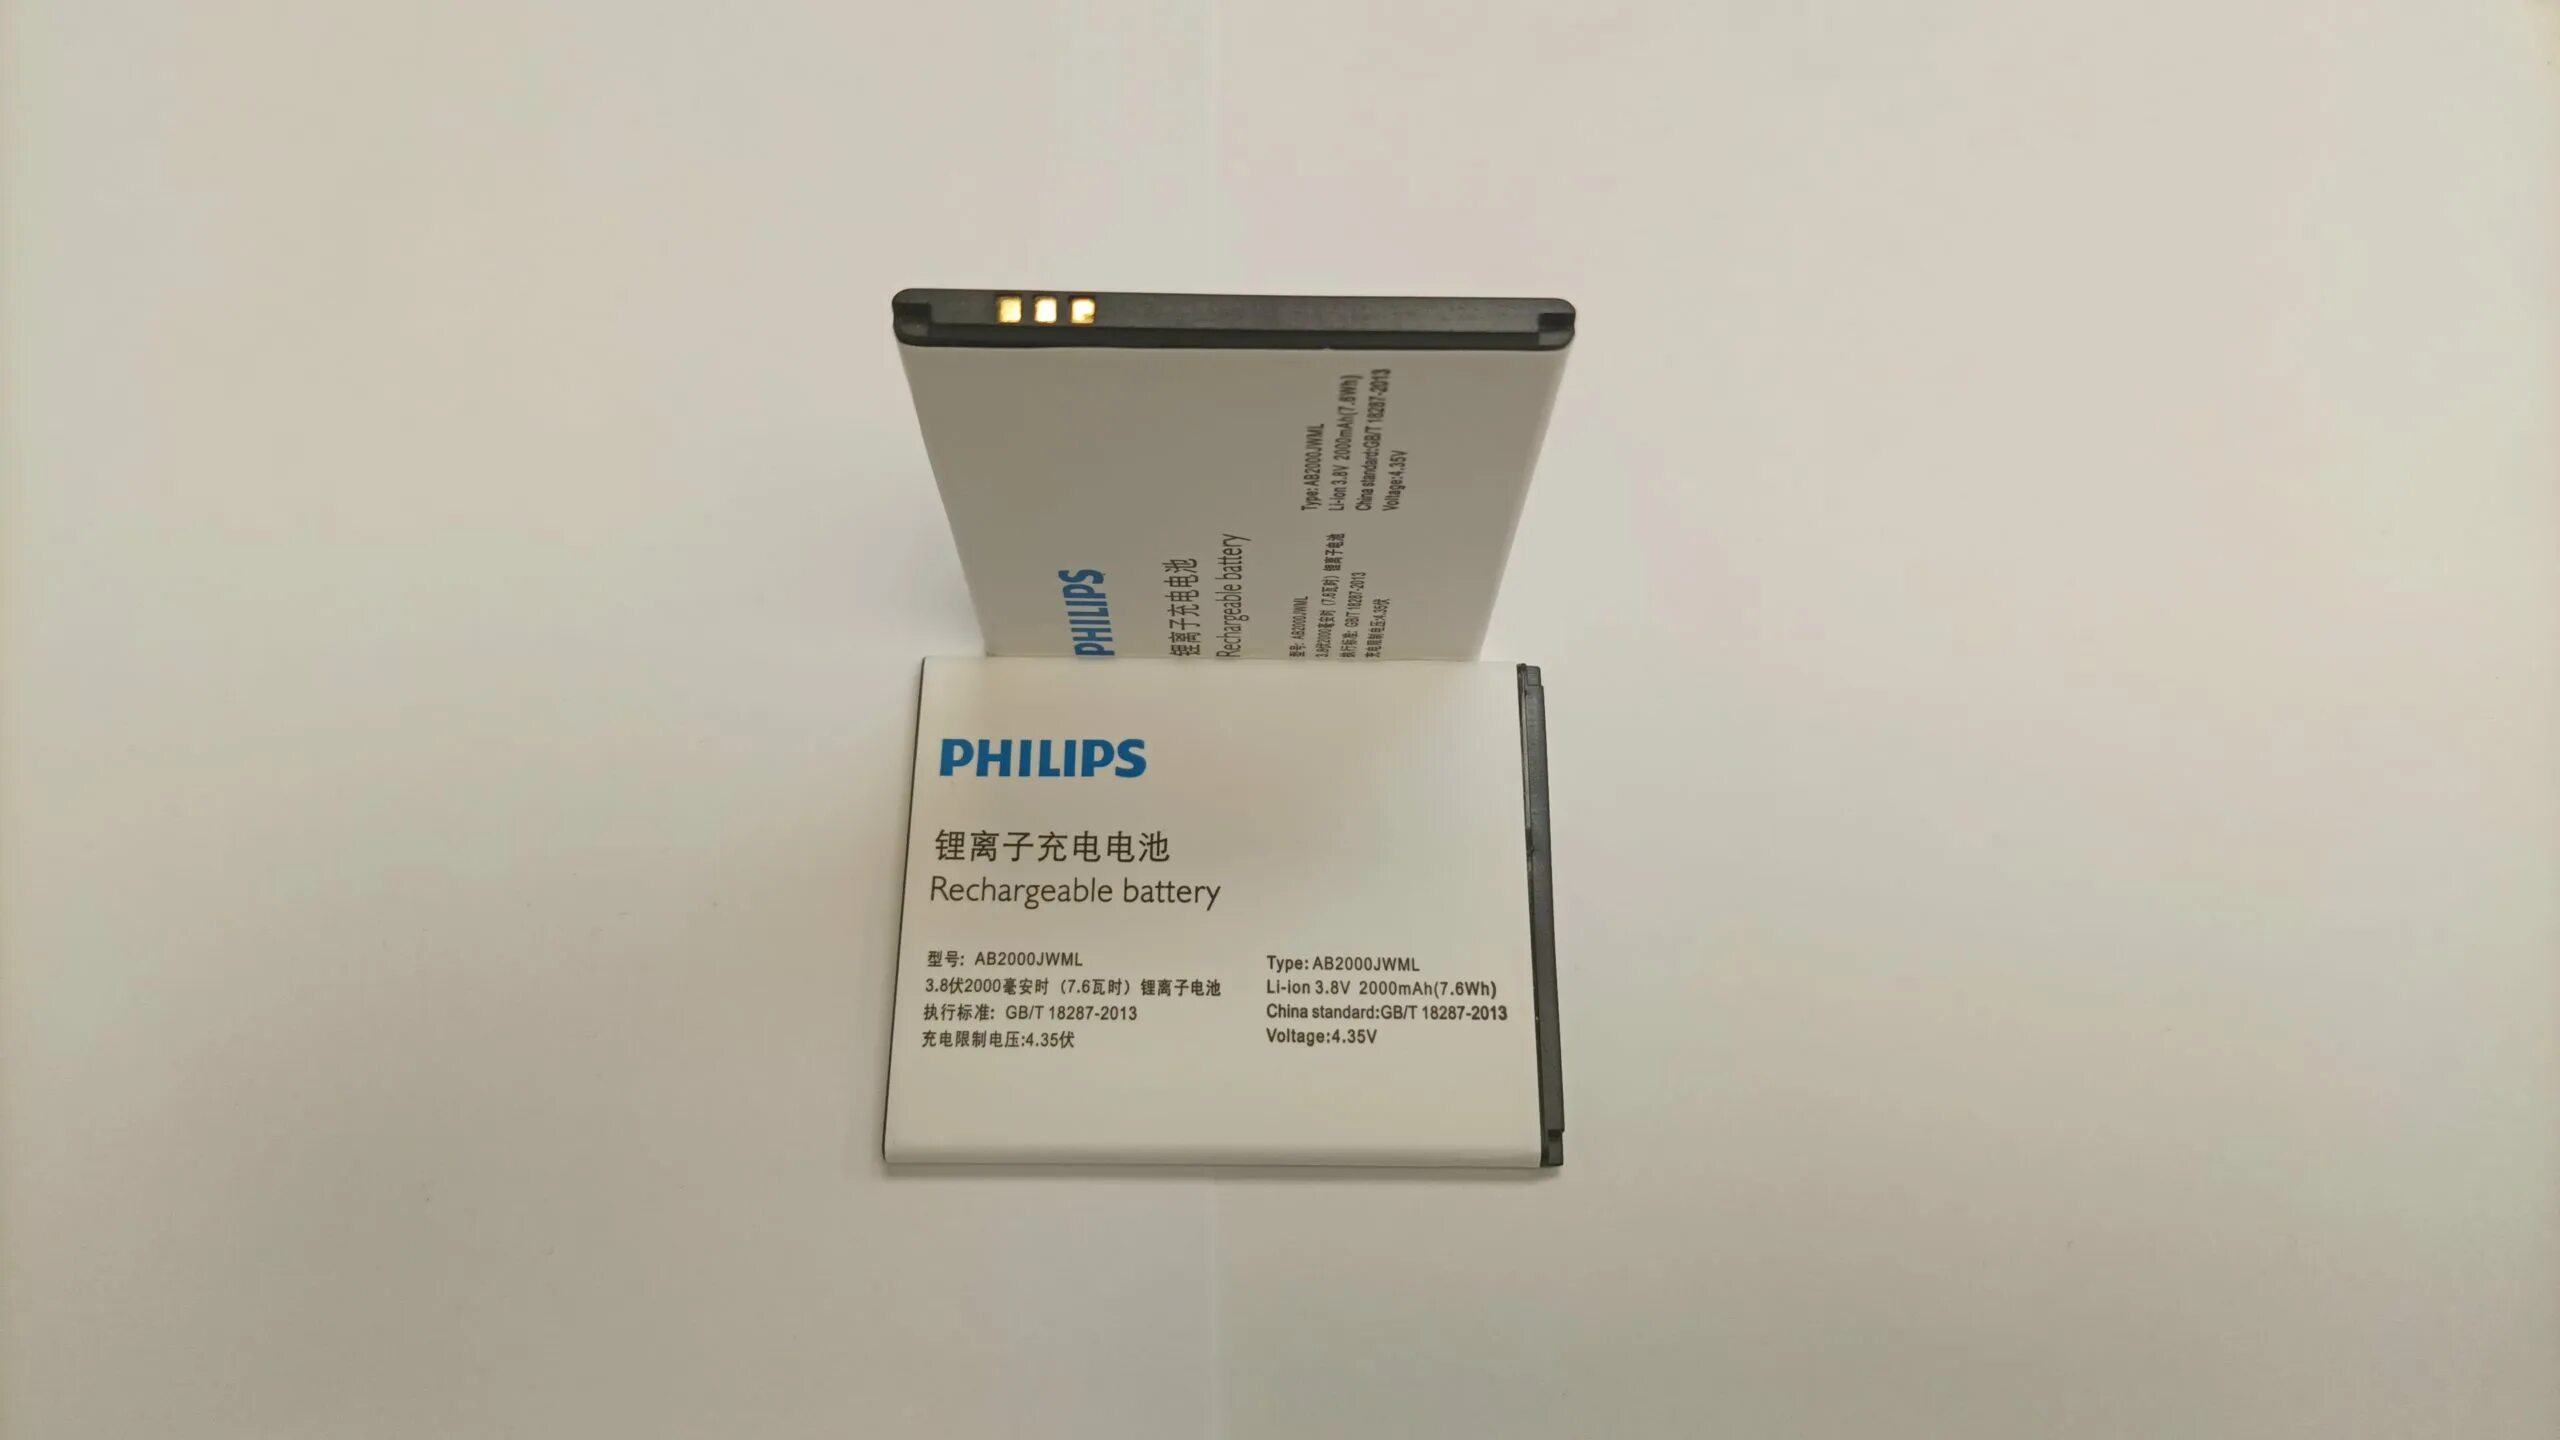 Купить аналог аккумулятора. Аккумулятор для Philips s337 (ab2000jwml). Аккумулятор на Филипс s257. Аккумулятор для Philips s5050. Батарейка Philips ab2000jwmt.